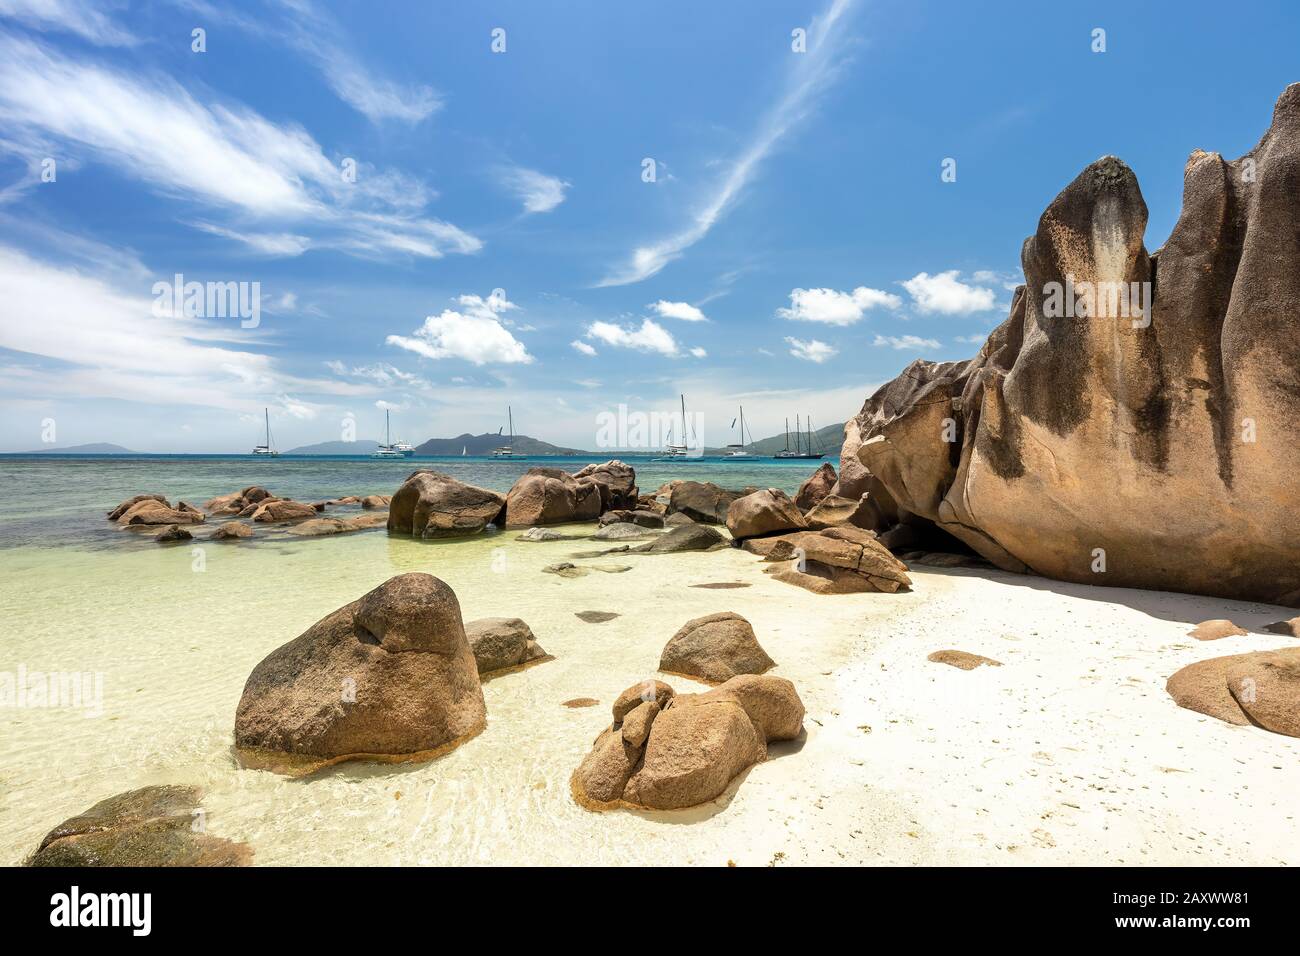 Bateaux à voile aux Seychelles, île de Curieuse, plage d'Anse St. Jose Banque D'Images